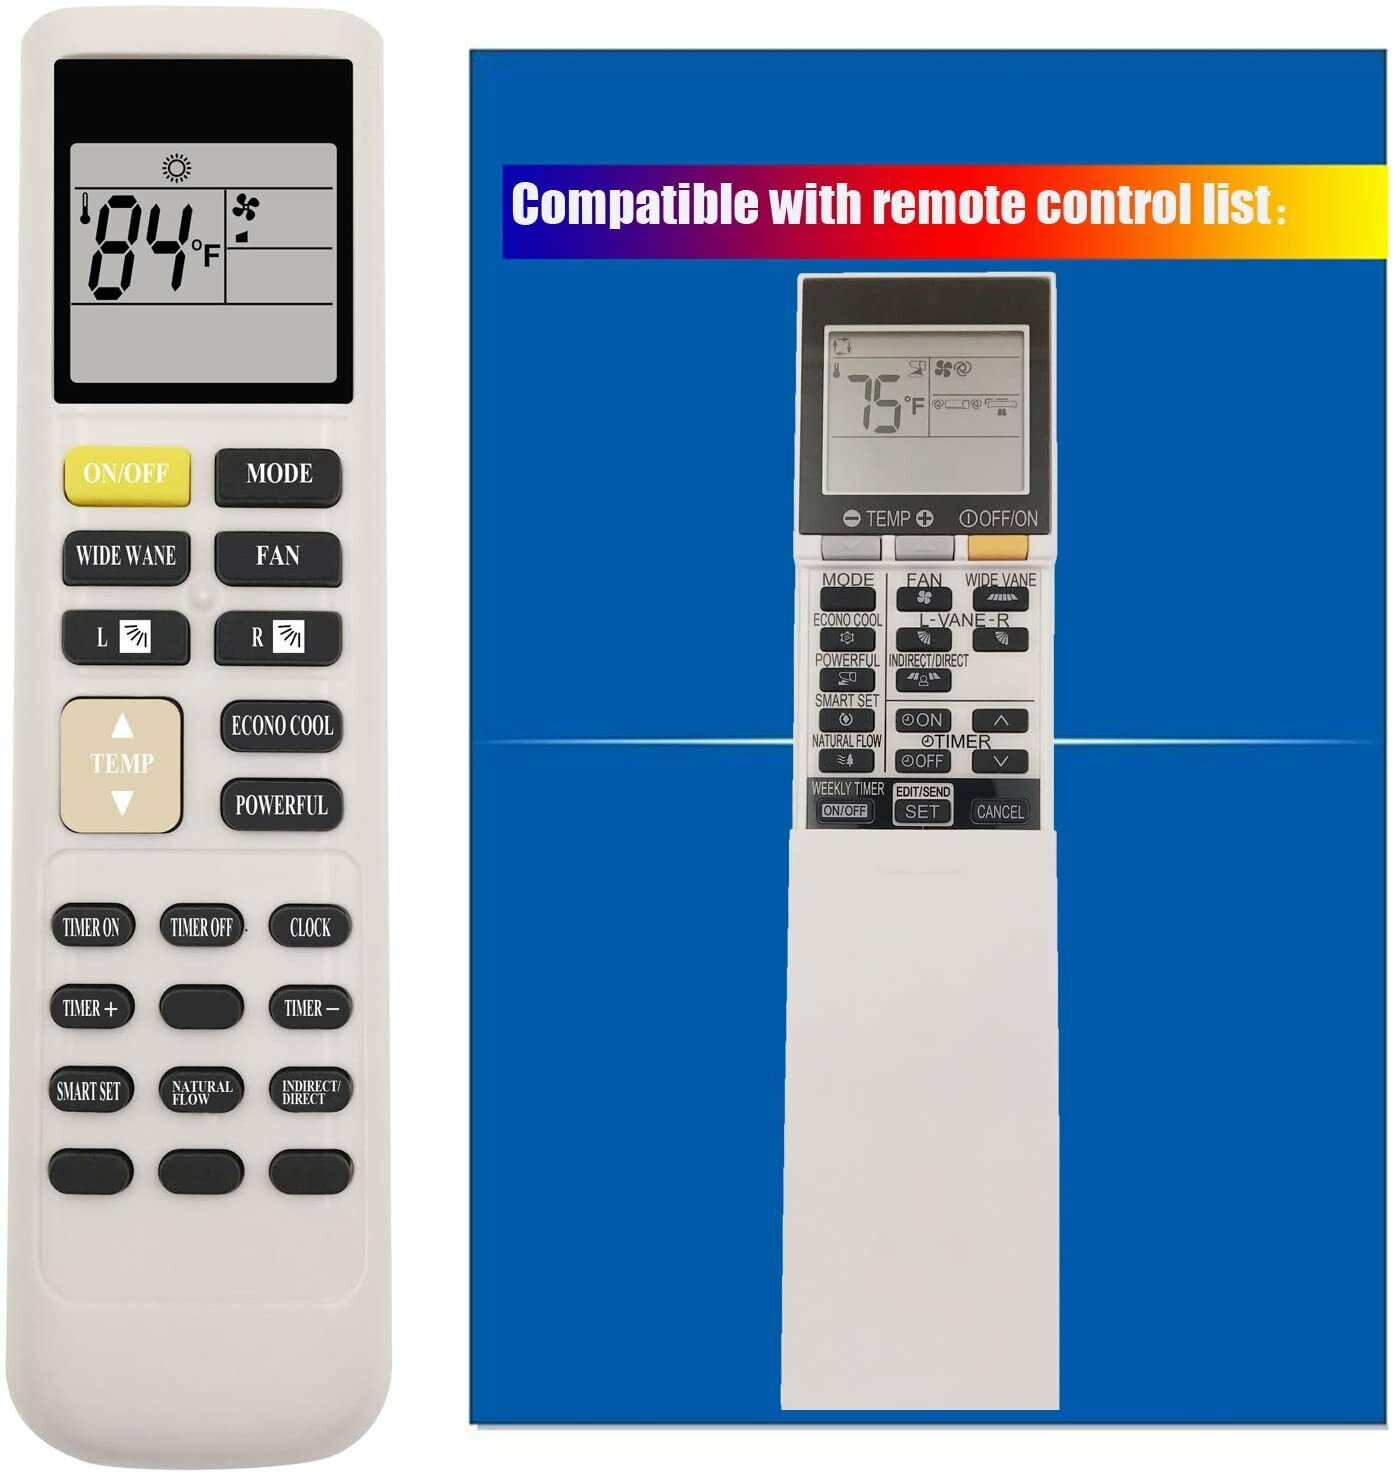 Mitsubishi Electric Mr. Slim Air Conditioner HVAC Remote Control SG15H E22T43426